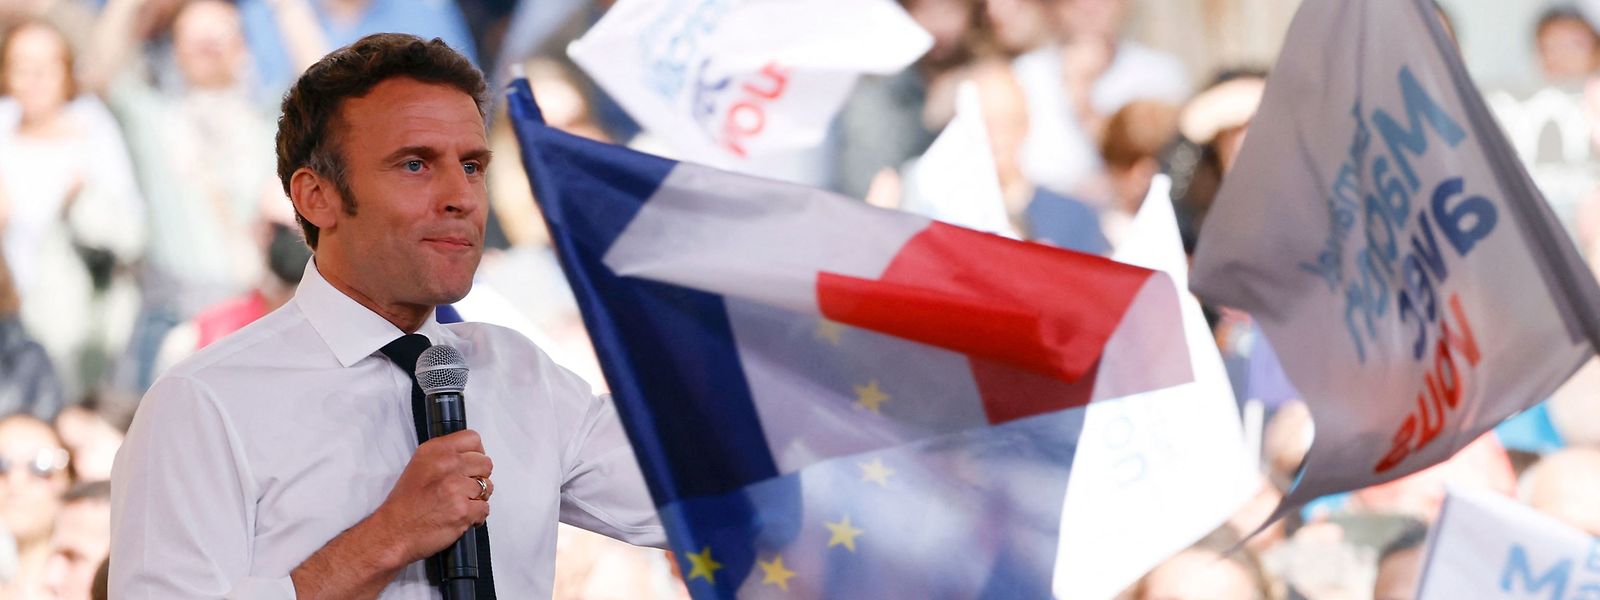 A Figeac, dans le sud de la France, et ailleurs, le président Emmanuel Macron est à la chasse aux voix depuis quelques jours.